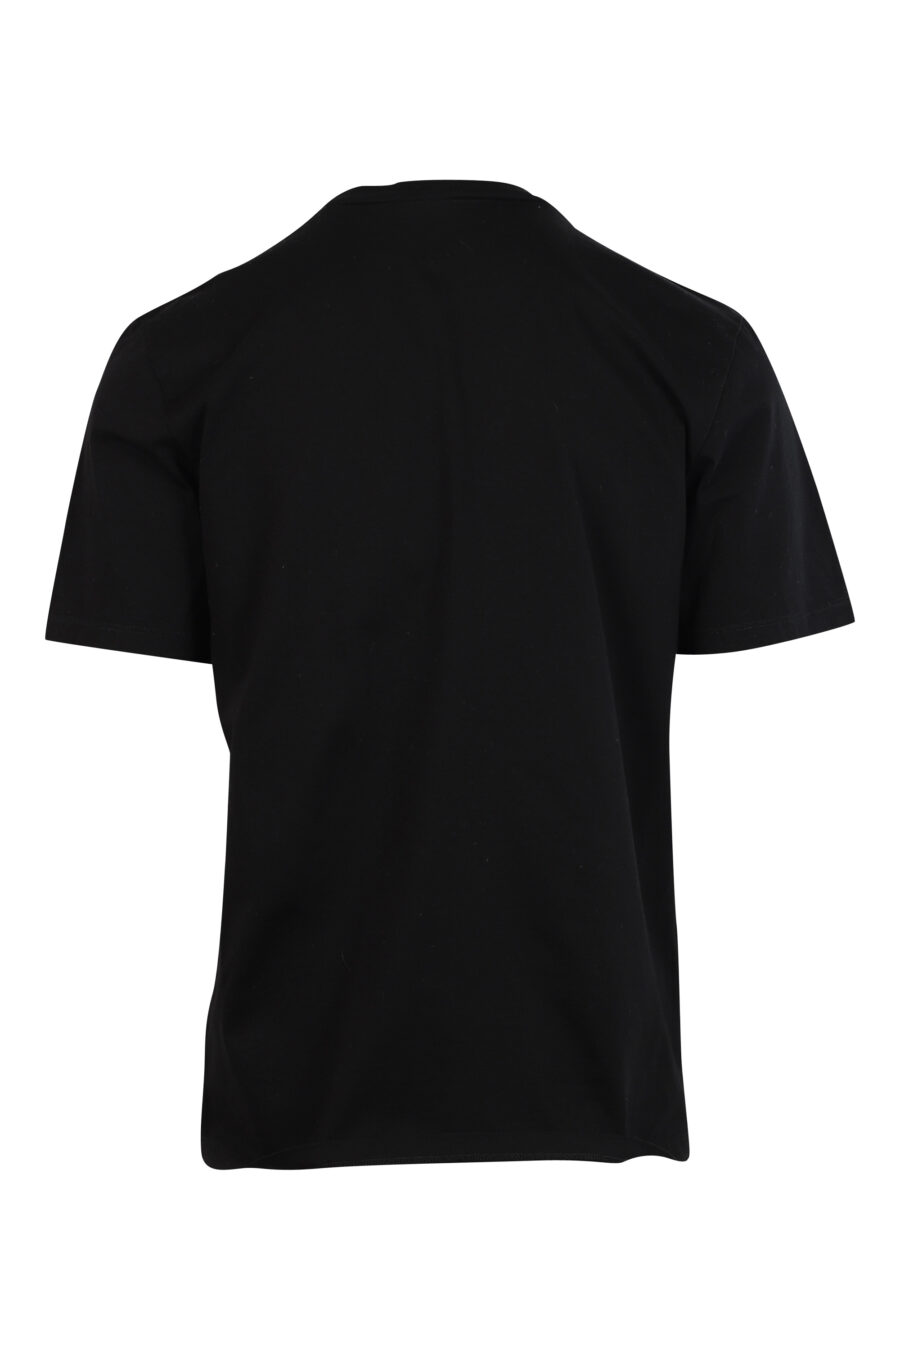 T-shirt preta com maxilogo em relevo preto - 8052134990285 2